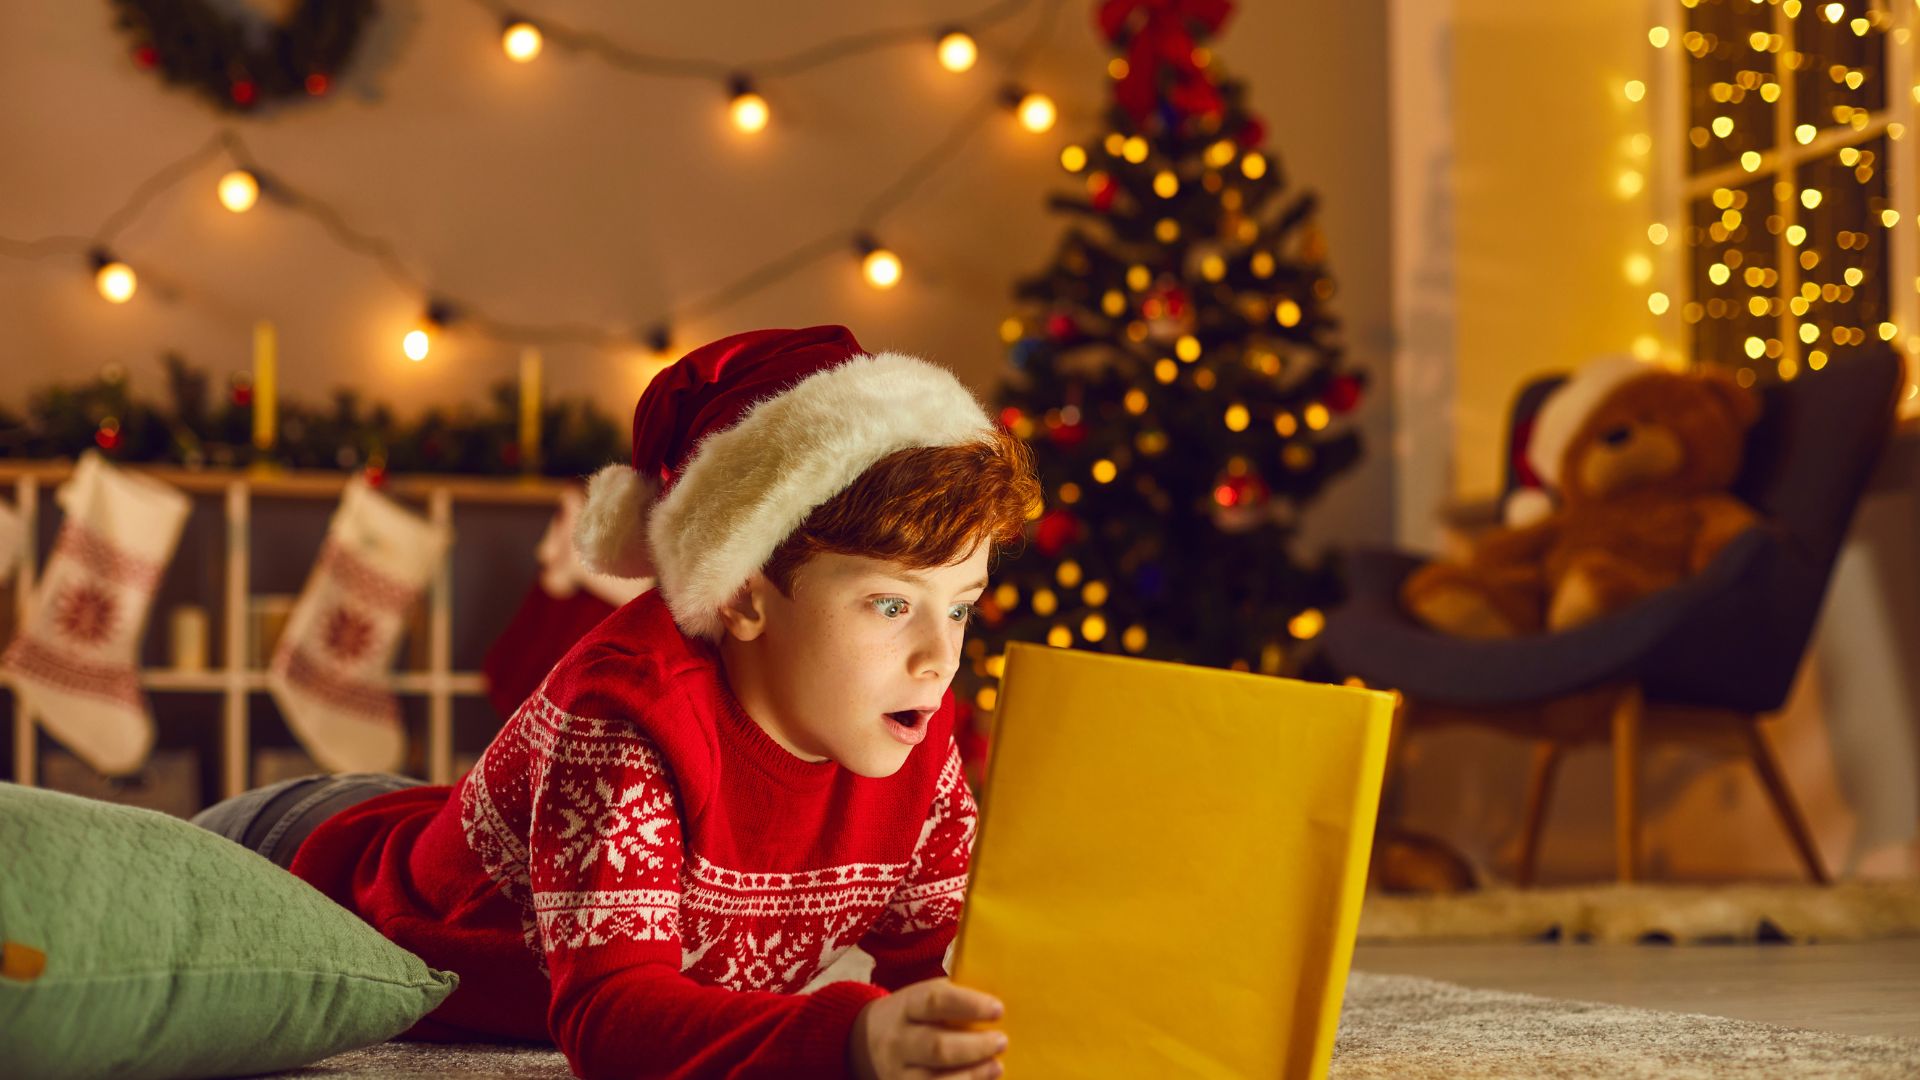 Imagem de um espaço decorado com enfeites natalinos. No chão, uma criança debruçada, lendo um livro de histórias. Ela está usando um suéter de lã e um chapéu de Natal na cor vermelho.